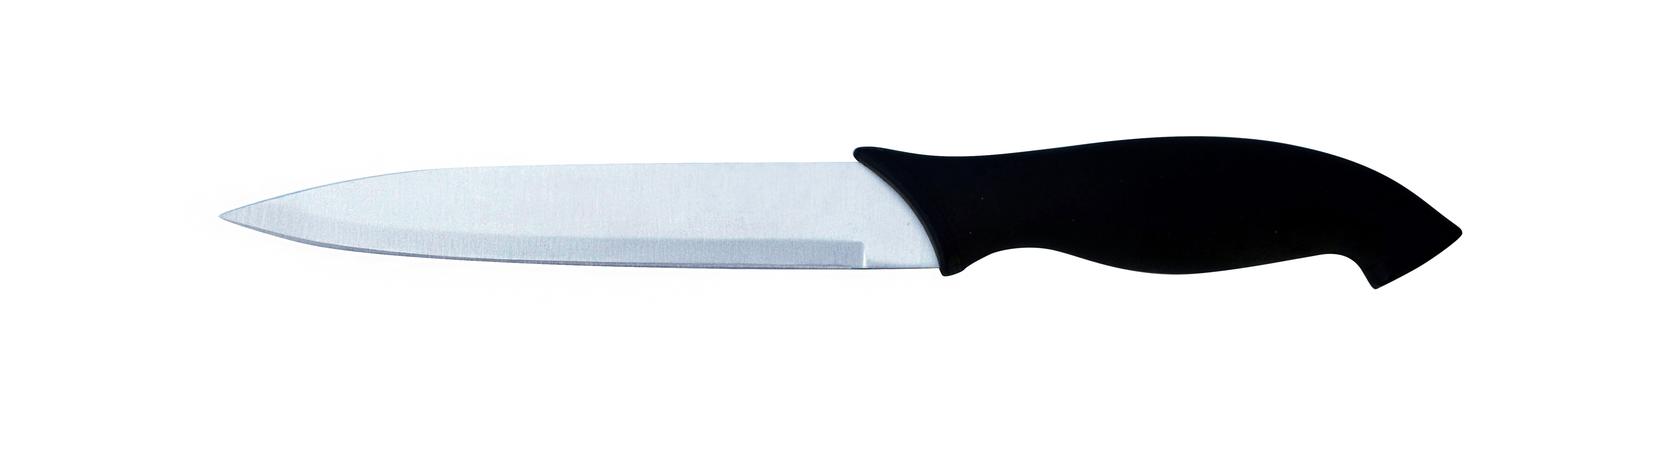 Provence Univerzální nůž Classic 13,5cm